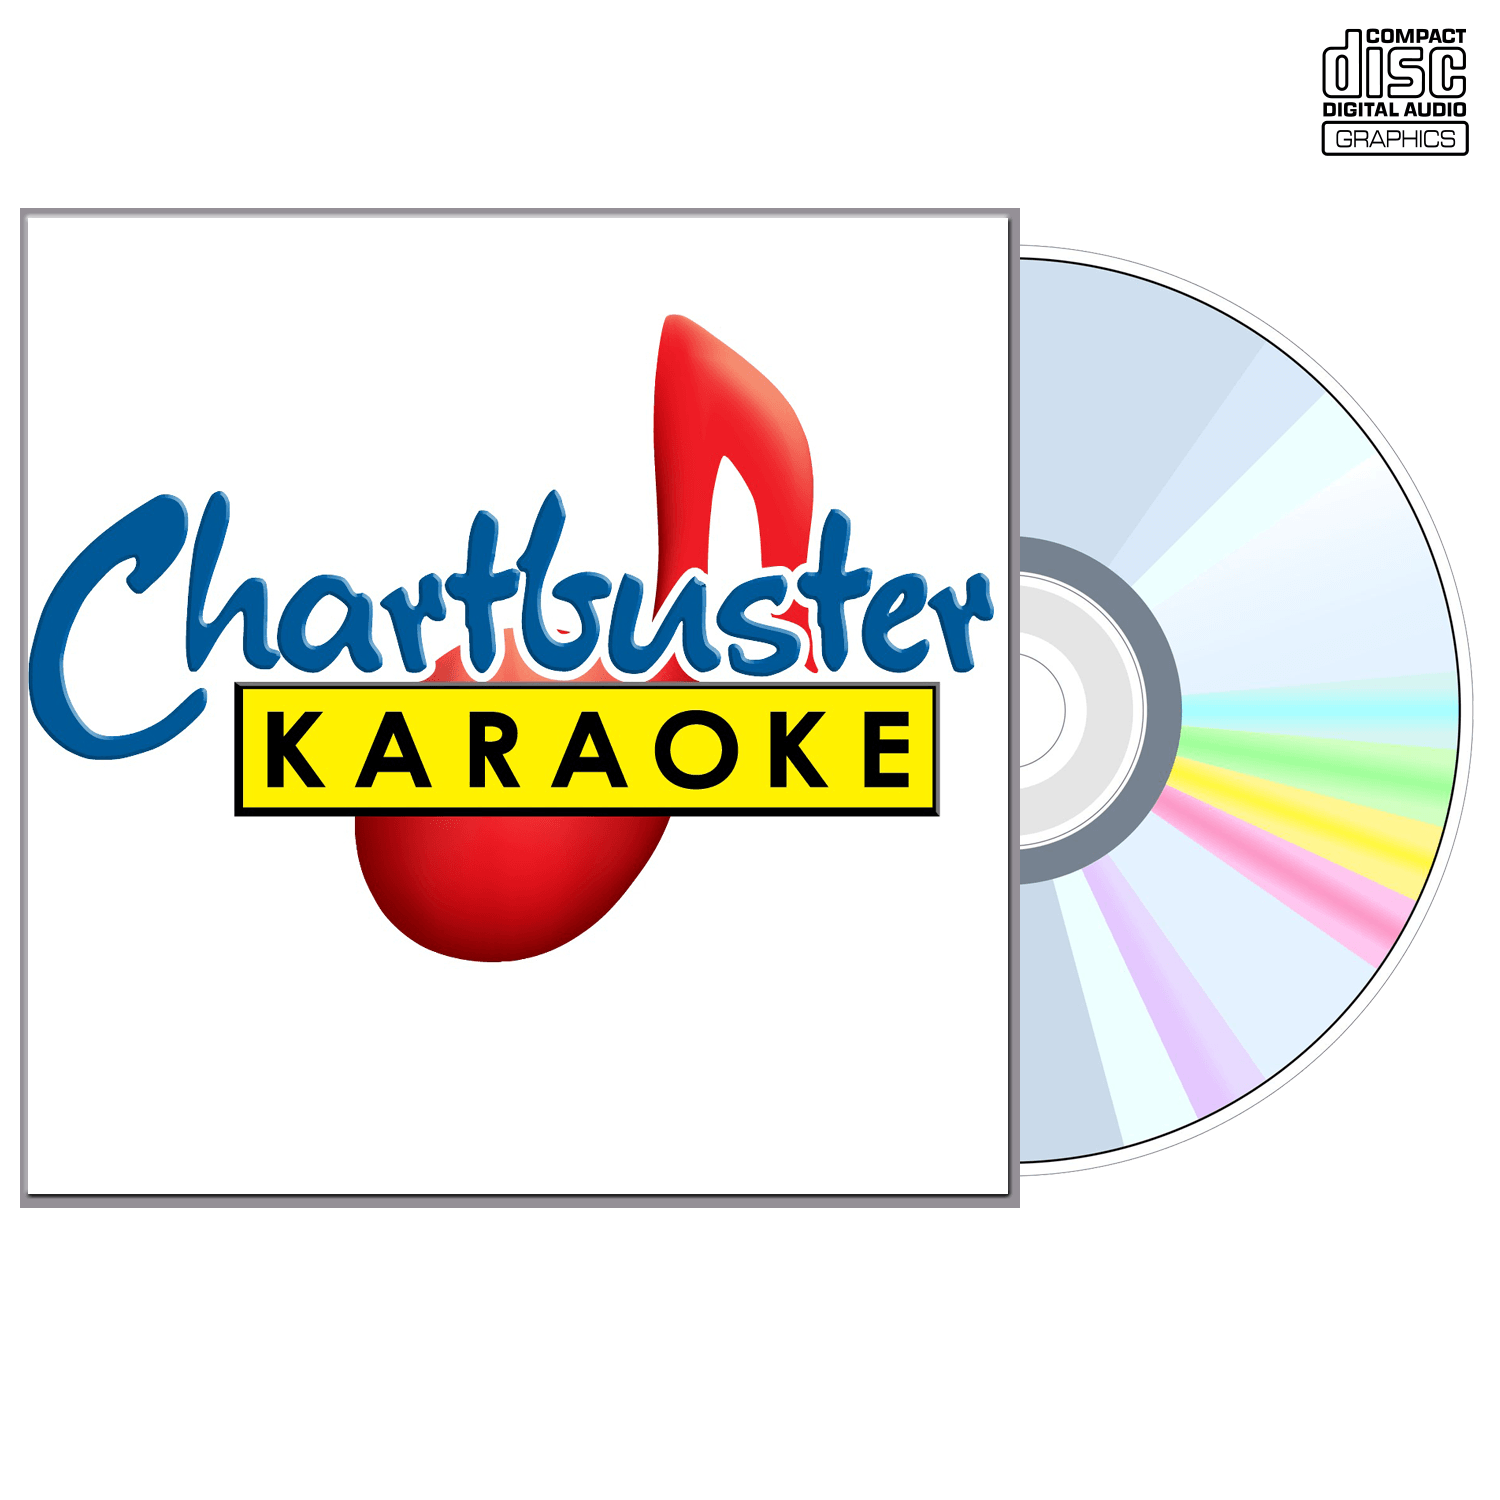 Marty Robbins Vol 1 - CD+G - Chartbuster Karaoke - Karaoke Home Entertainment